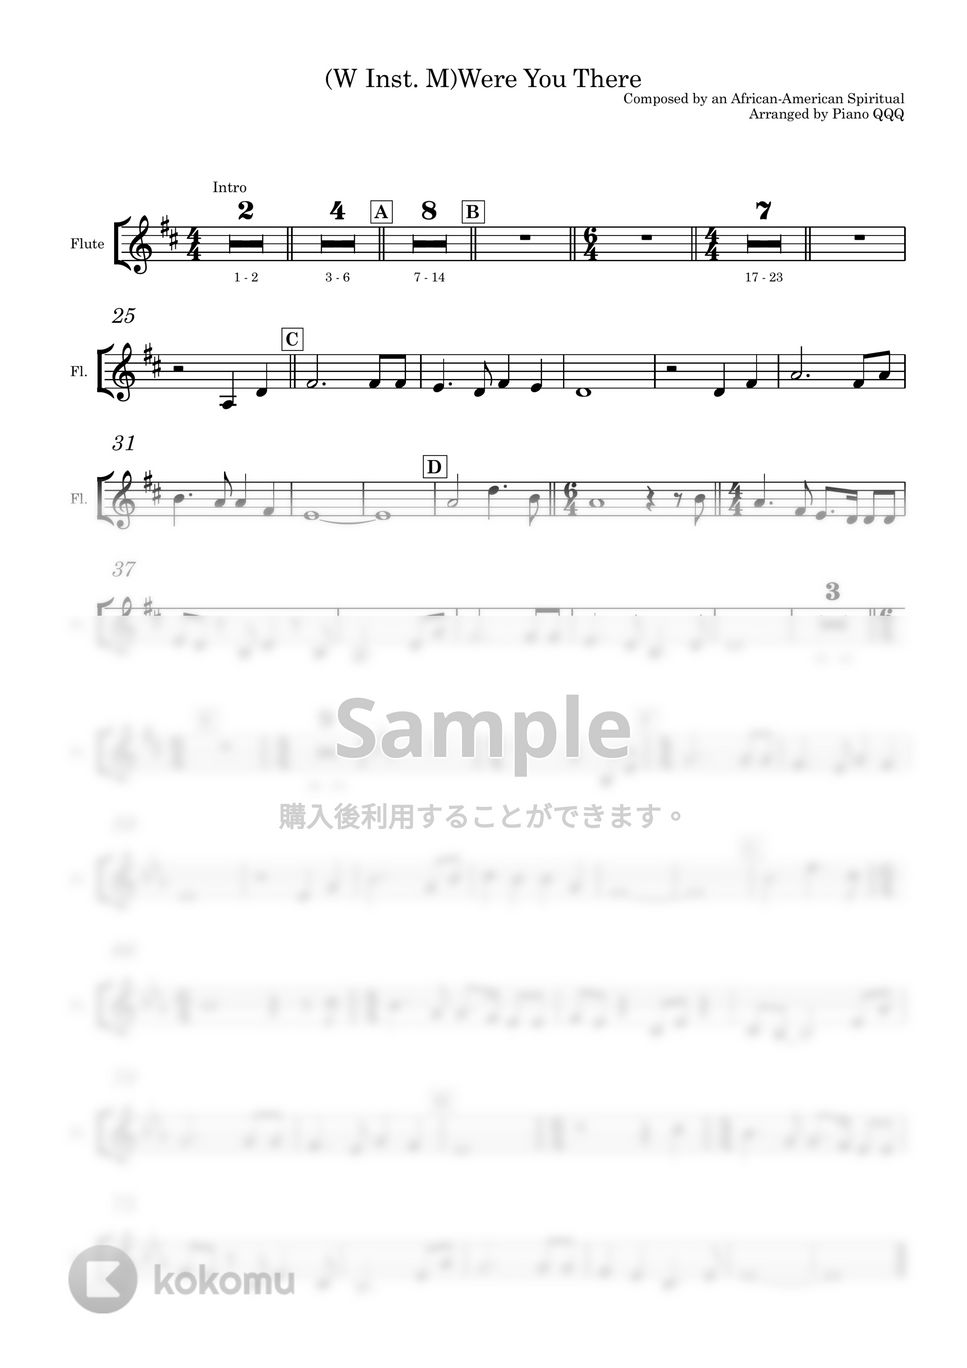 黒人靈歌 - そこに君がいたのか (Were  you there) (デュエット/ピアノと楽器) by Piano QQQ